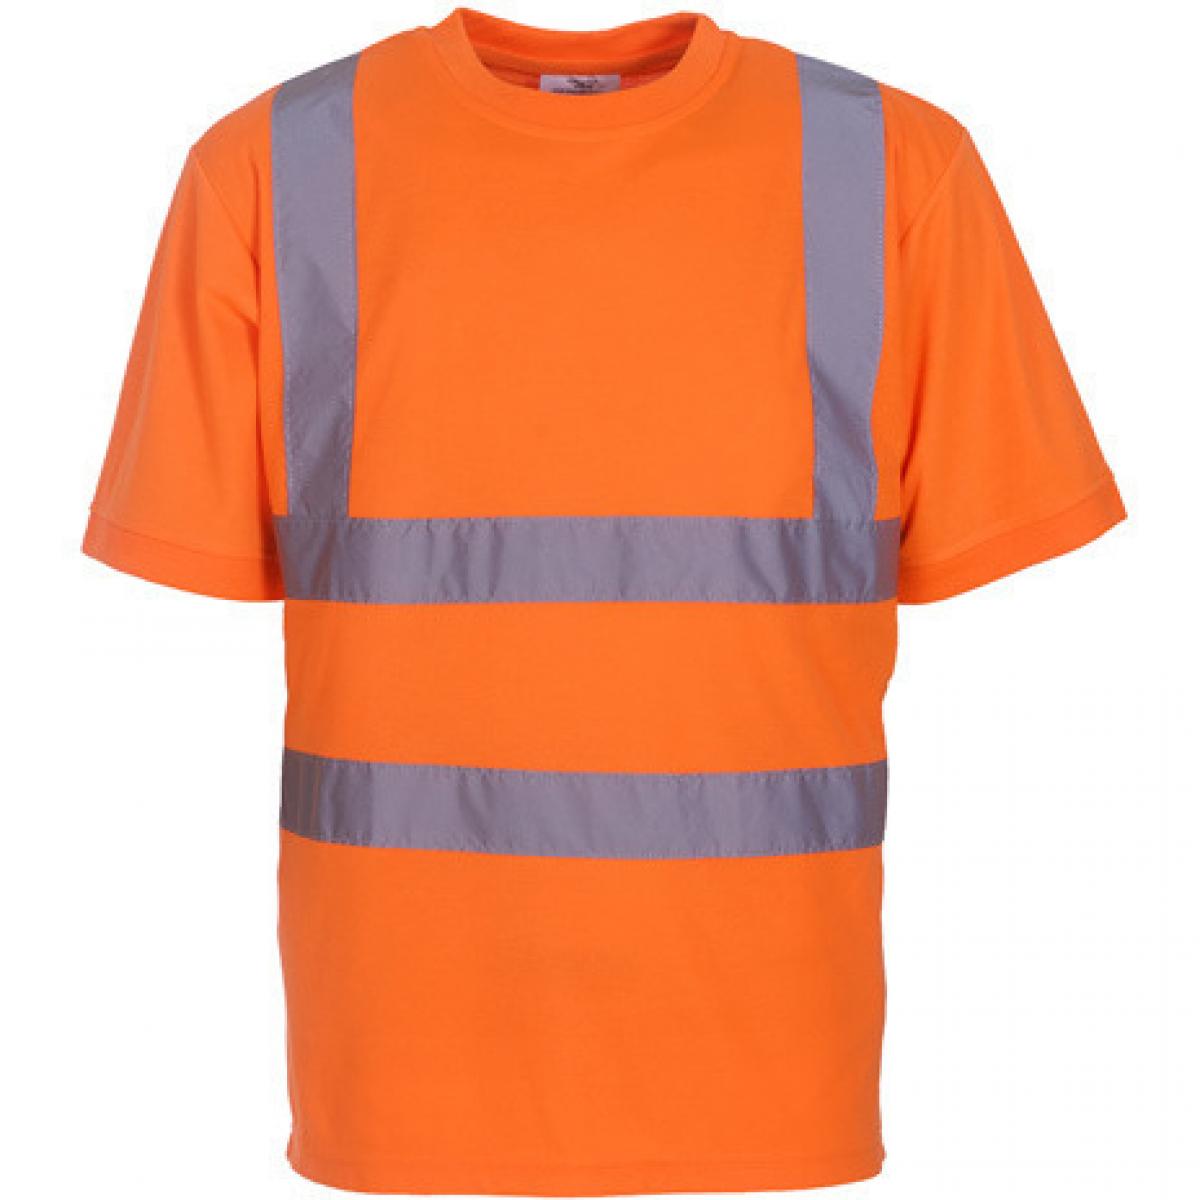 Hersteller: YOKO Herstellernummer: HVJ410 Artikelbezeichnung: Herren Hi Vis sicherheits T-Shirt EN ISO 20471 bis 6XL Farbe: Hi-Vis Orange